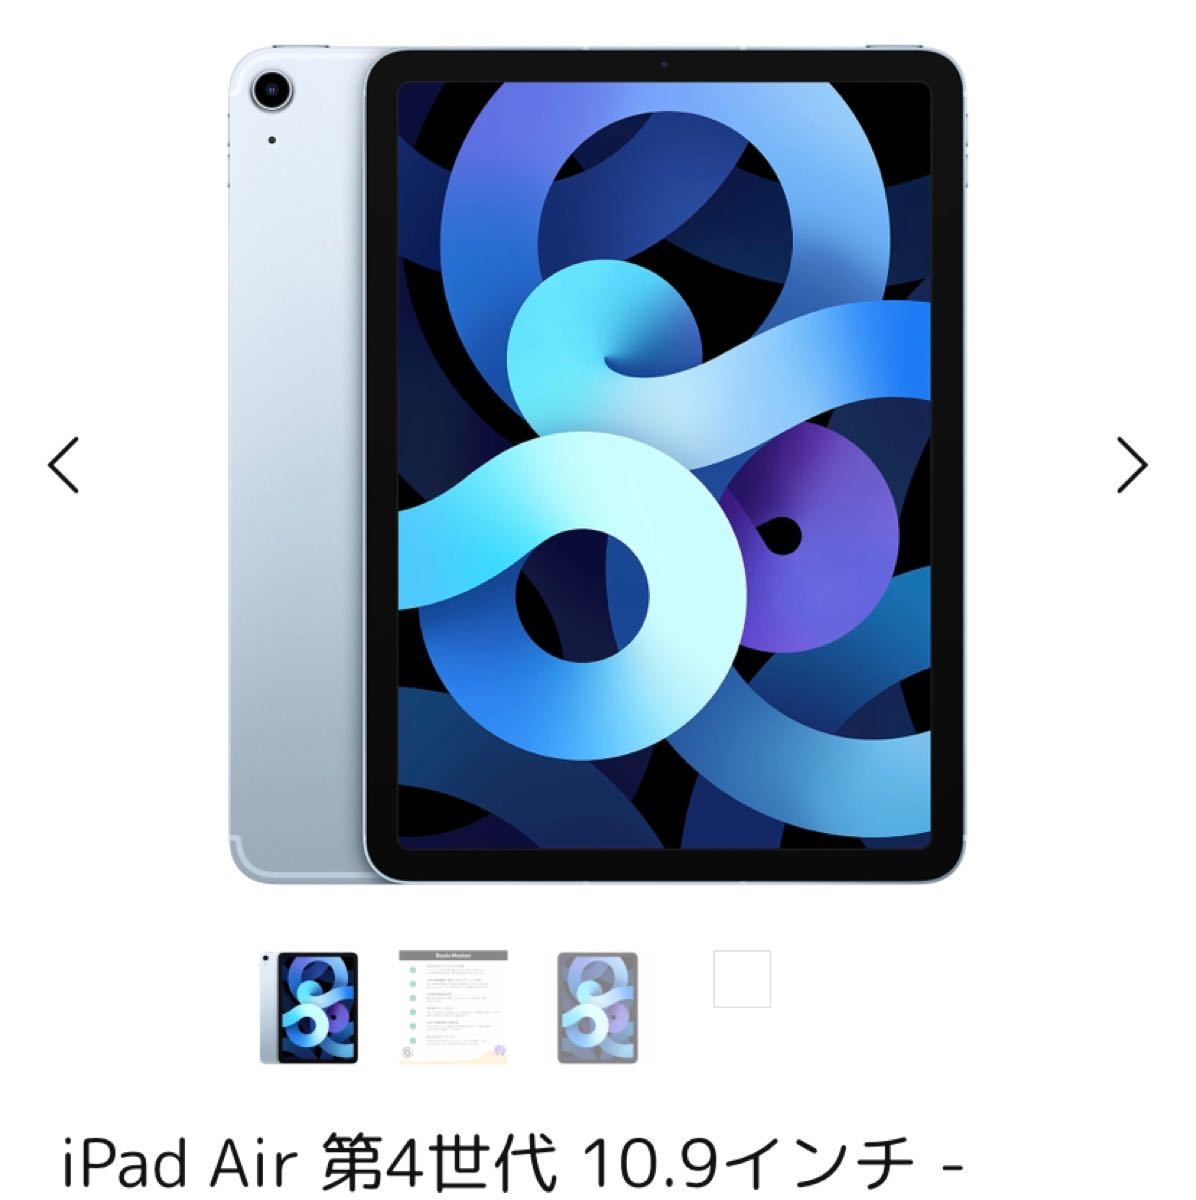 IPad Air 4 ブルー 64GB 箱無し ケース フィルム スタイラスペン付き